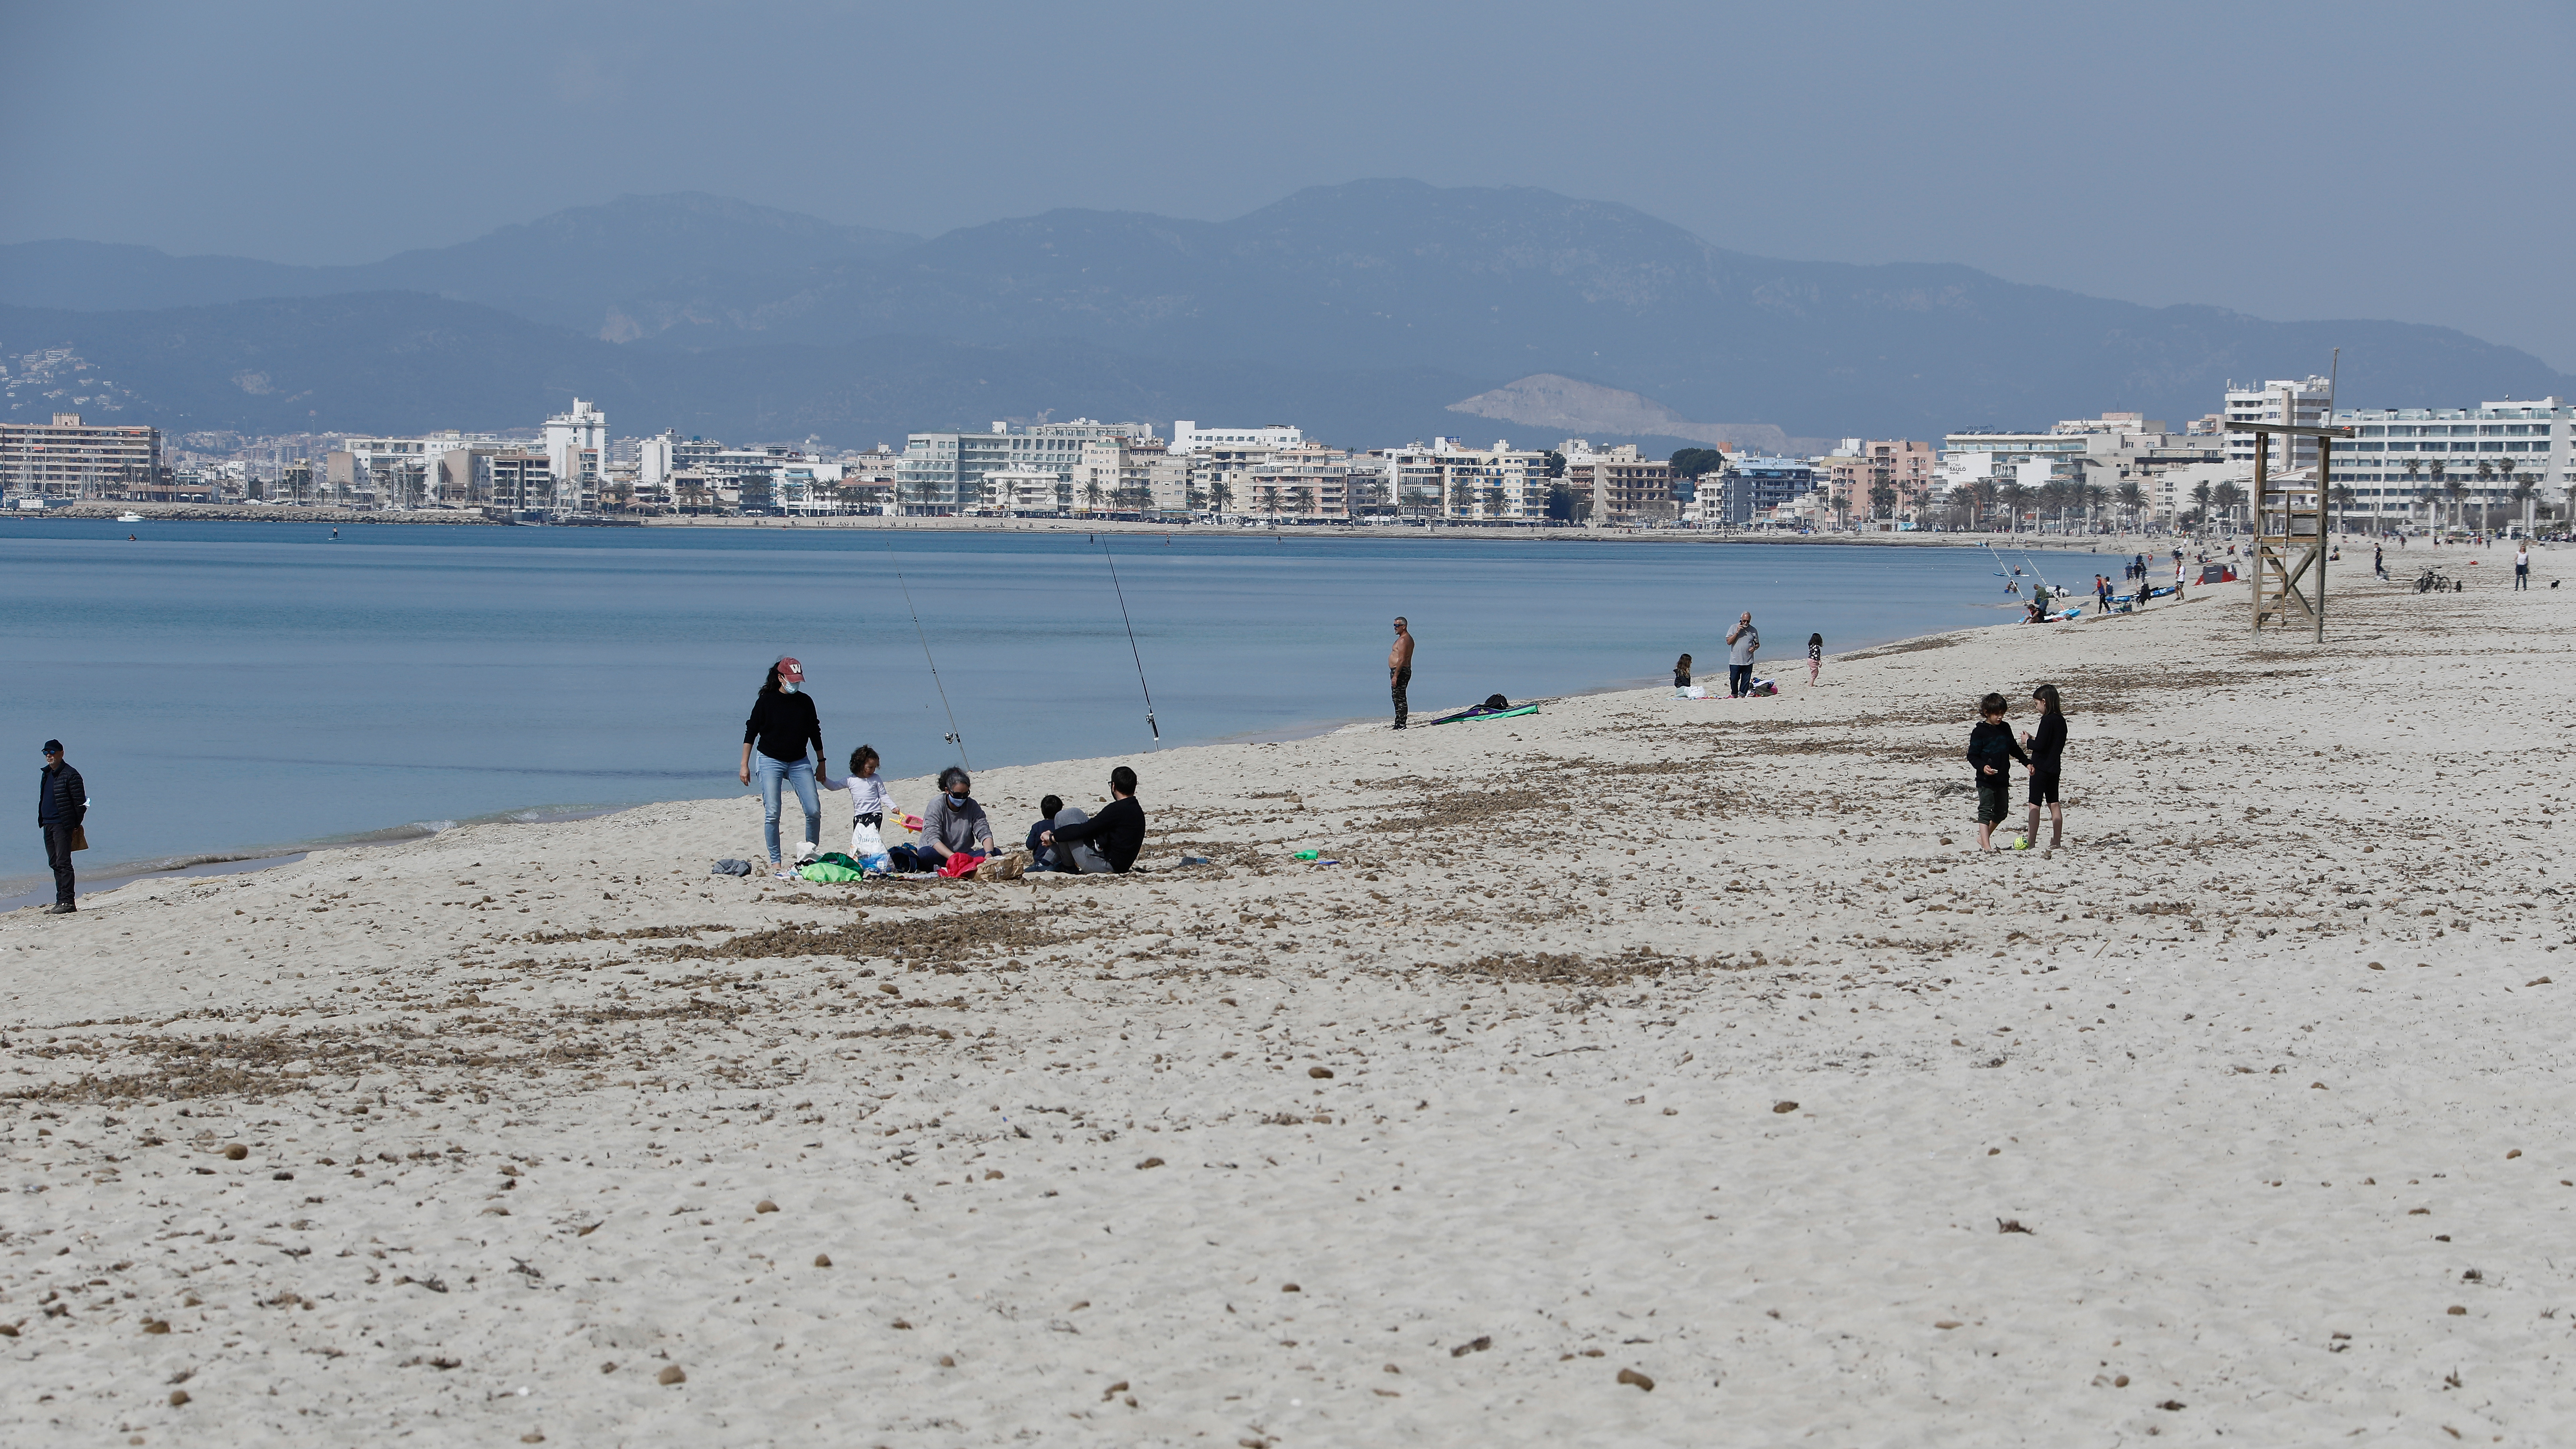 Besucher gehen am Strand von El Arenal auf Mallorca spazieren. | dpa